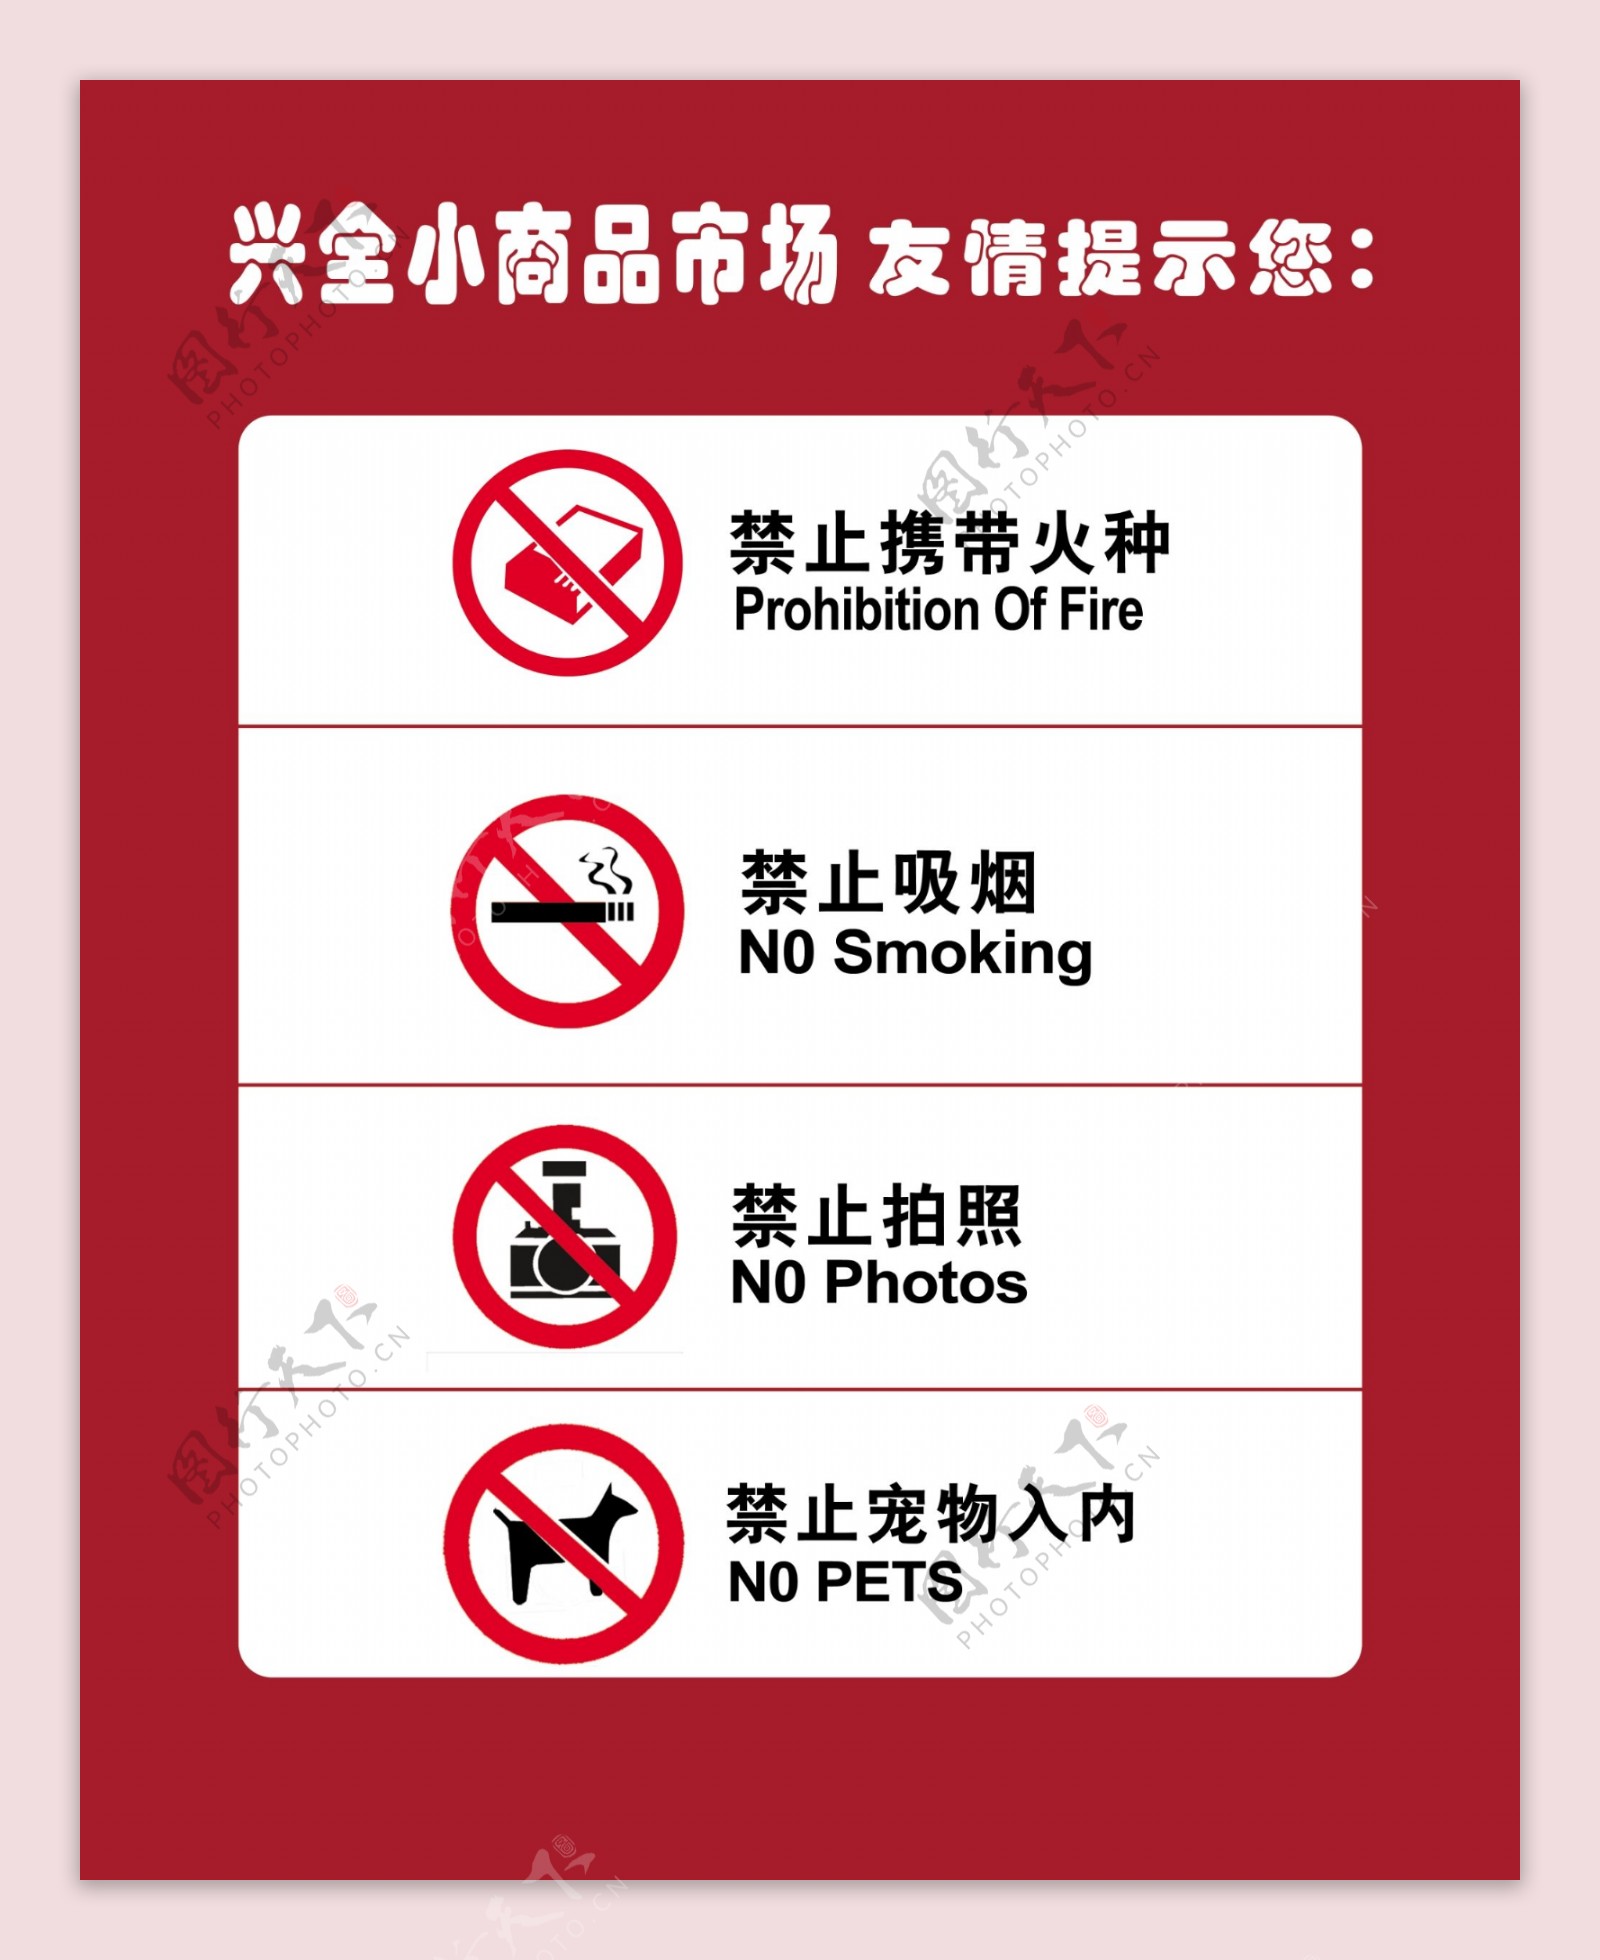 禁止吸烟携带宠物入内图片